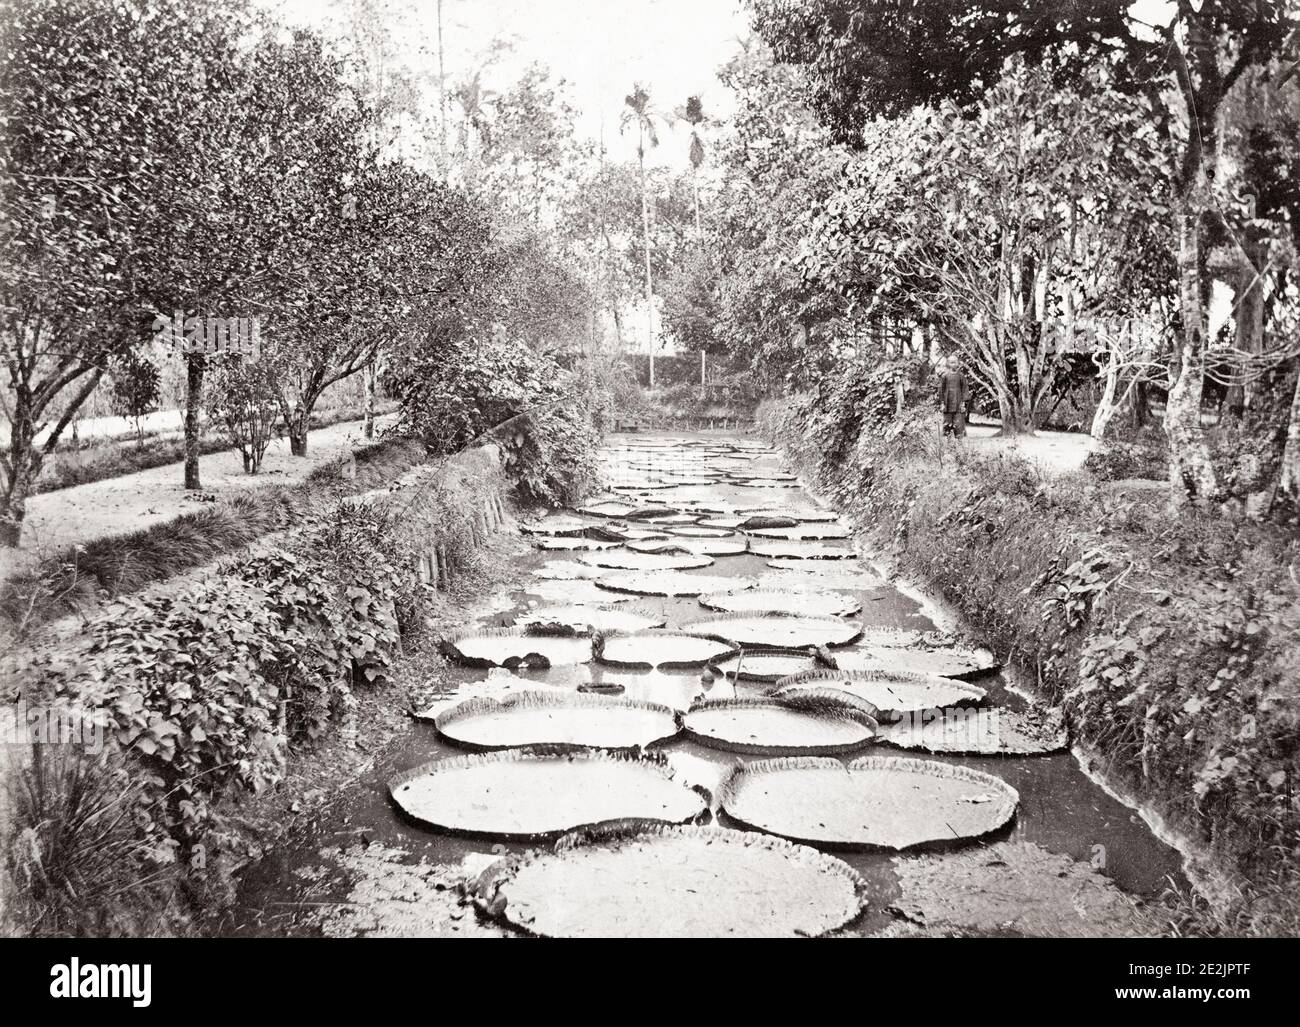 Vintage-Foto des 19. Jahrhunderts: Riesige Seerosen im Botanischen Garten, Bogor, Buitenzorg, Java, Indonesien, um 1880. Stockfoto